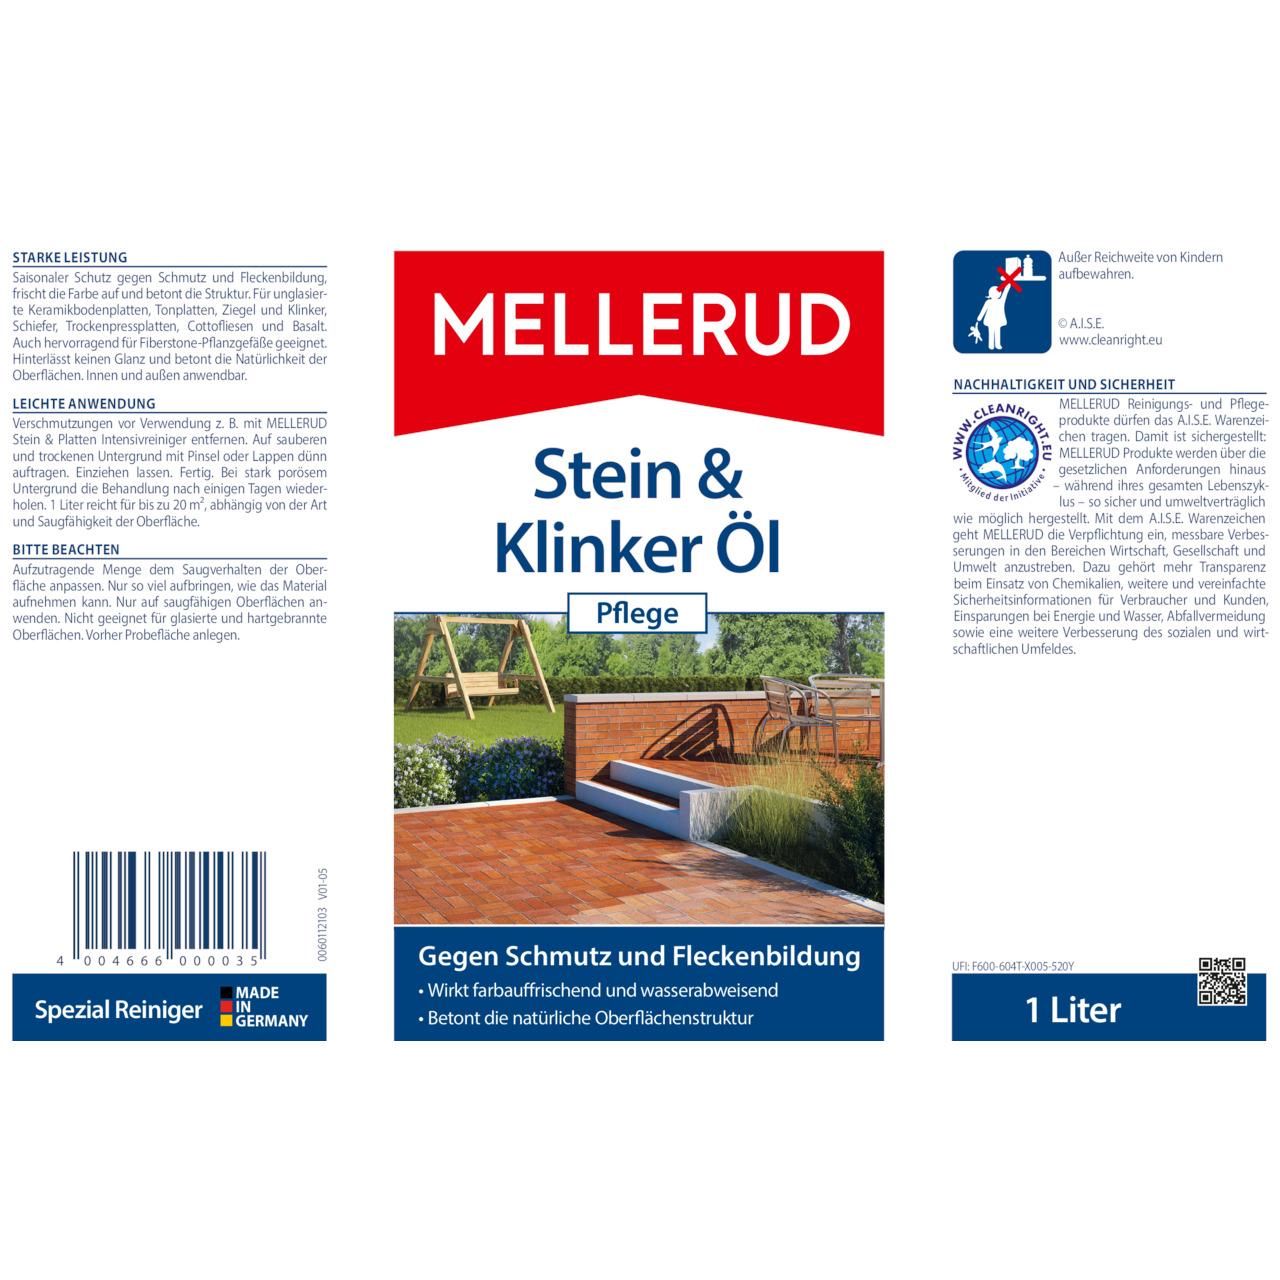 Stein & Klinker Öl Pflege 1,0 l